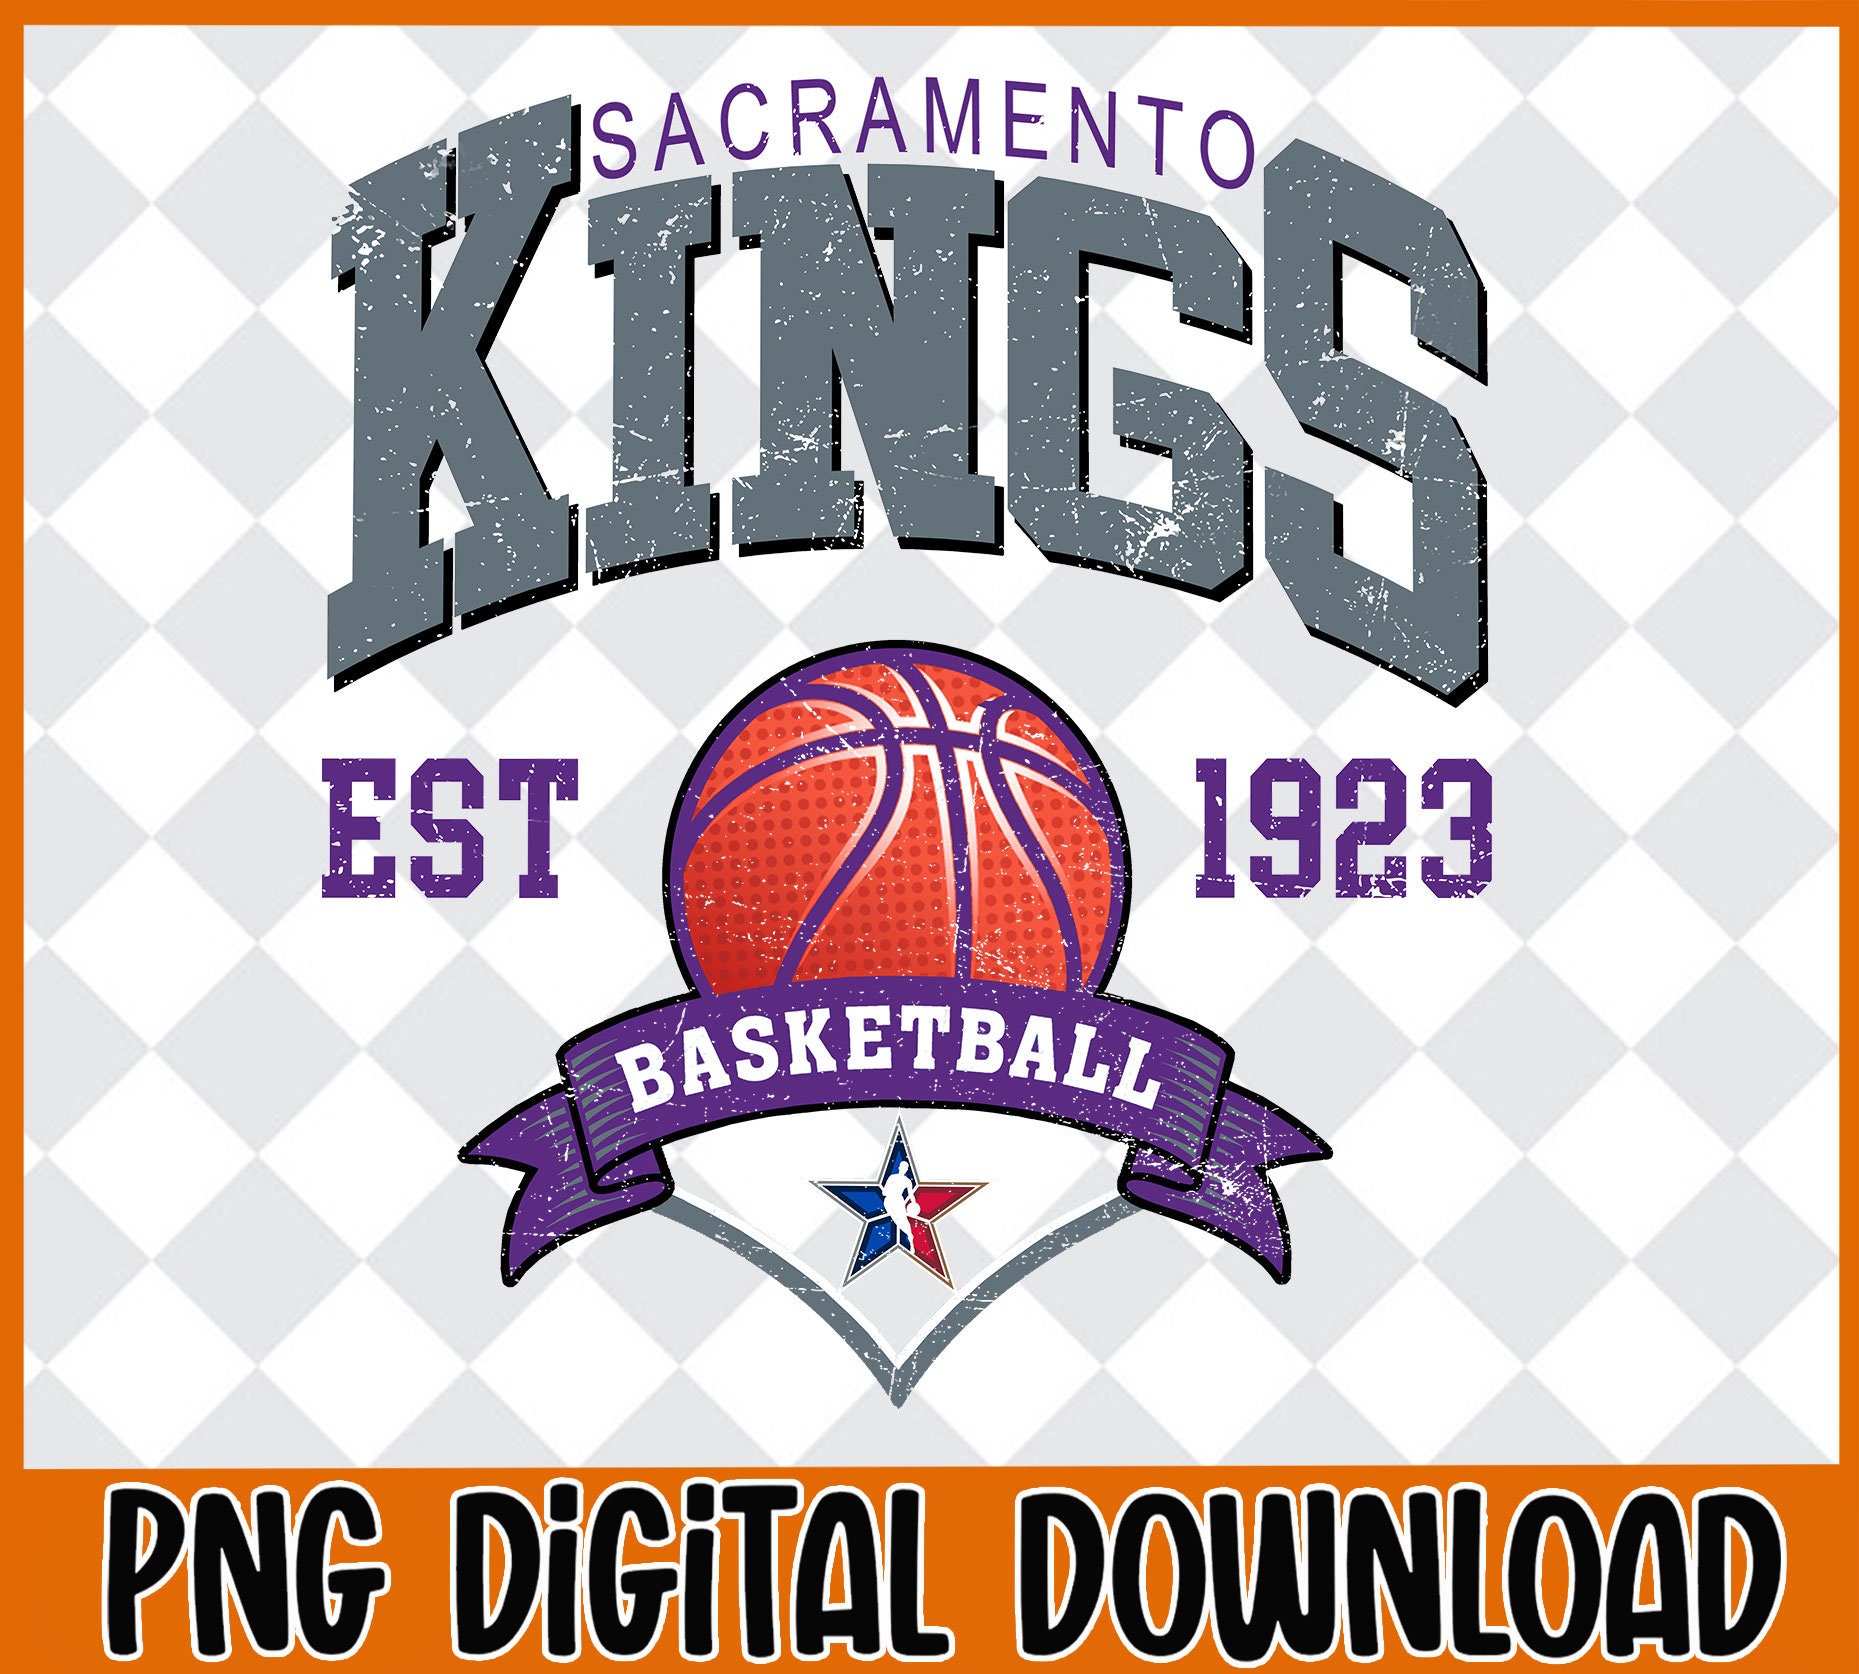 Sacramento Kings Official NBA Team Logo Poster - Costacos Sports